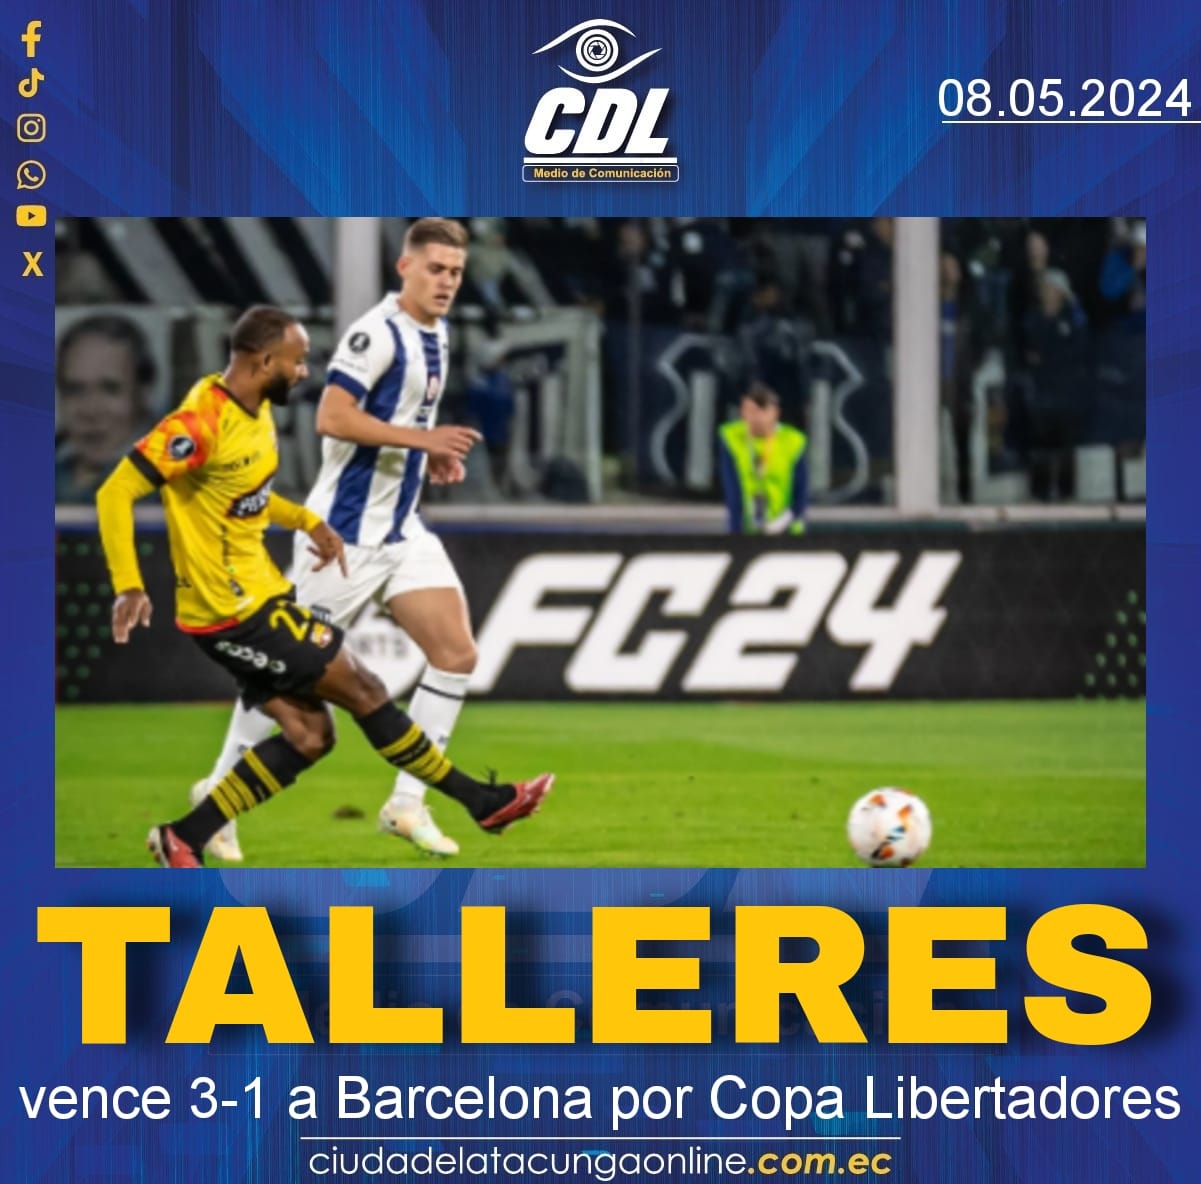 Talleres vence 3-1 a Barcelona por Copa Libertadores